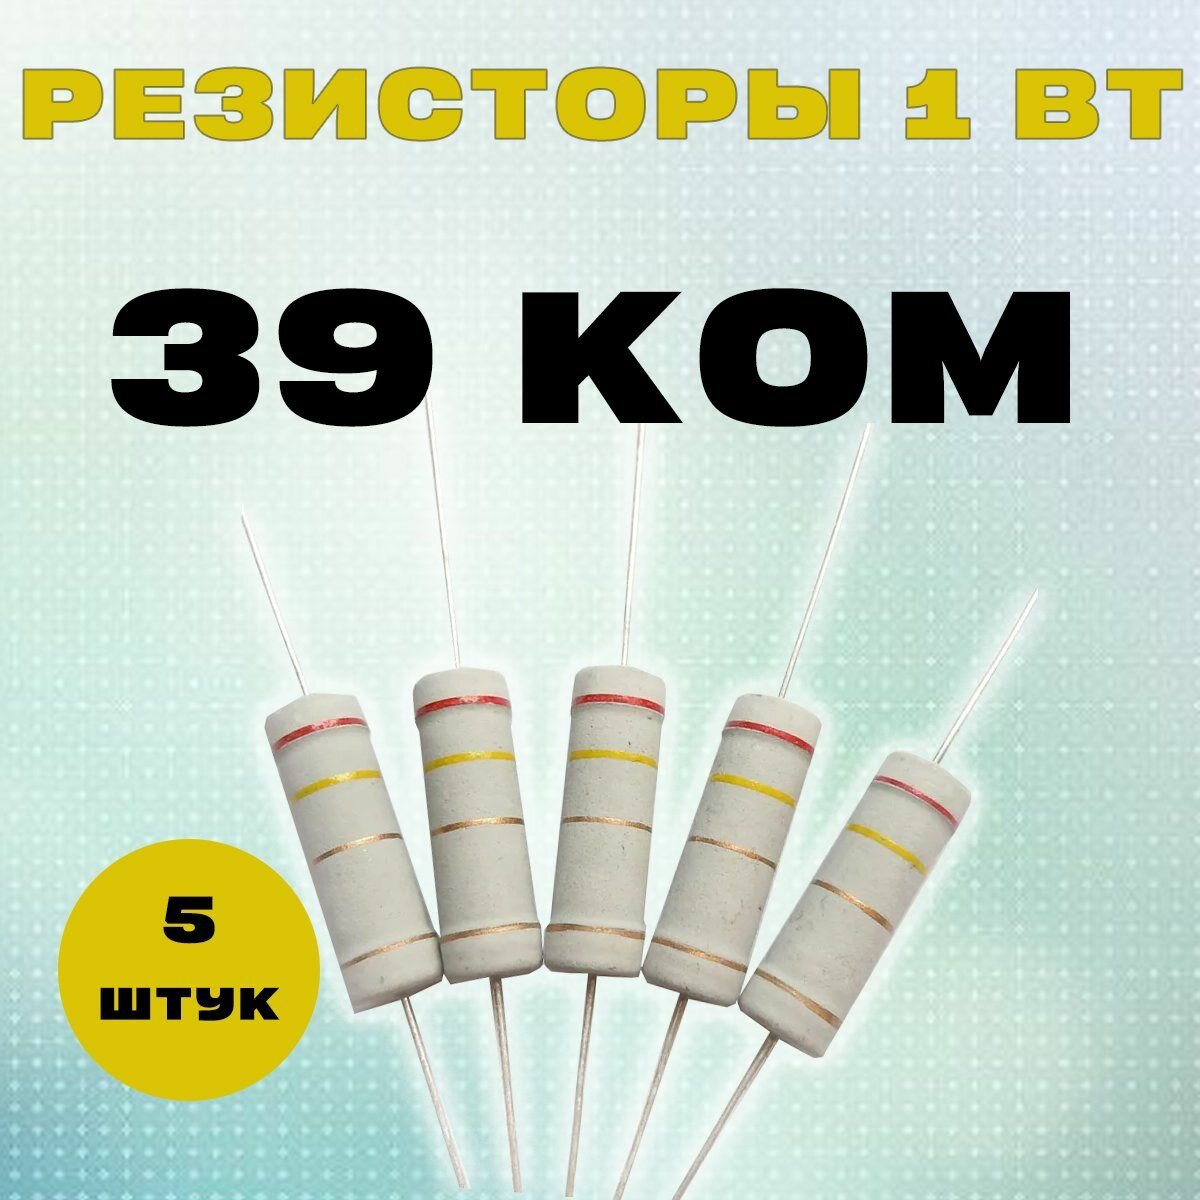 Резистор 1W 39K kOm - 1 Вт 39 кОм